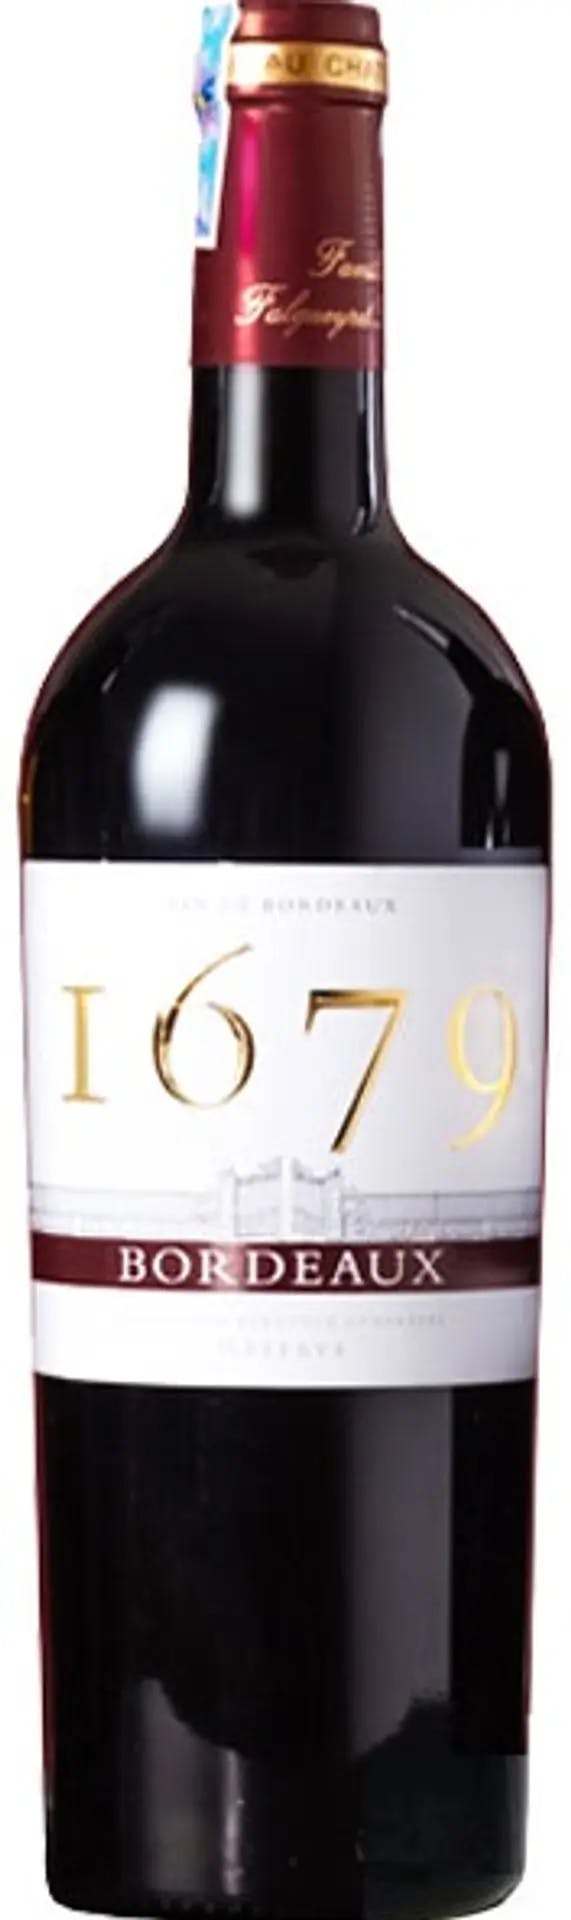 1679 Bordeaux Rouge 750ml